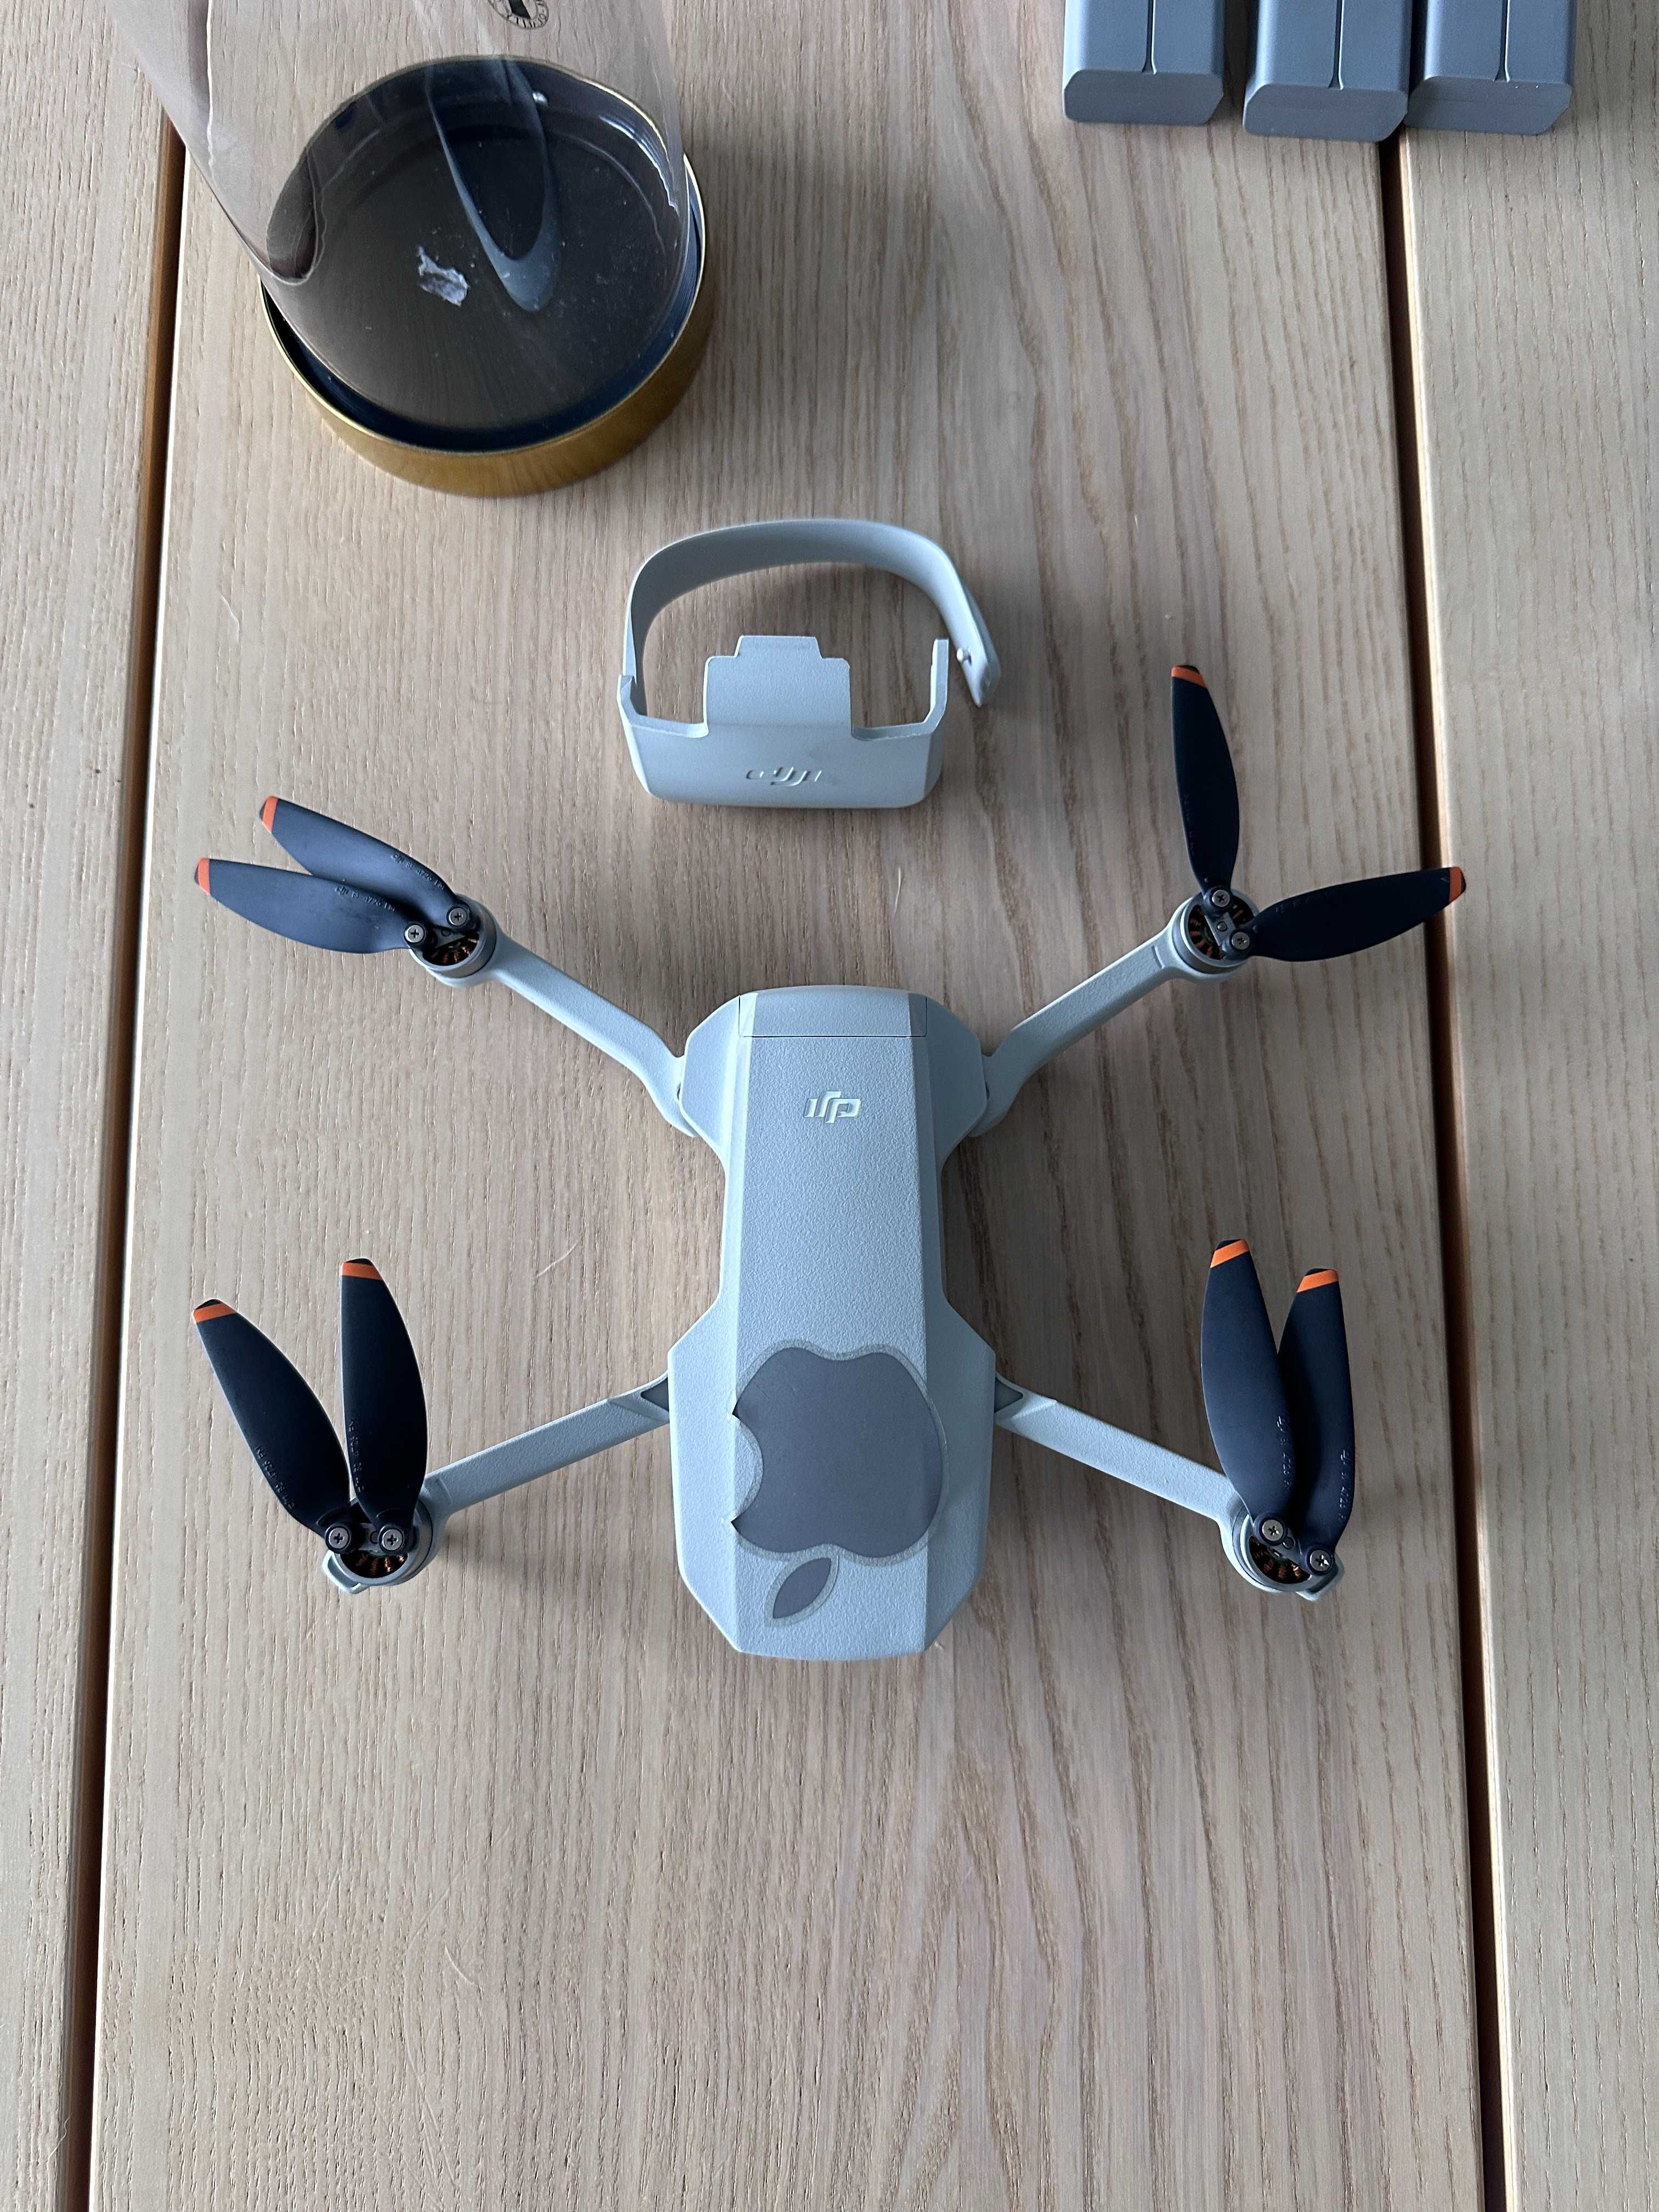 Drone Mini 2 Combo como novo